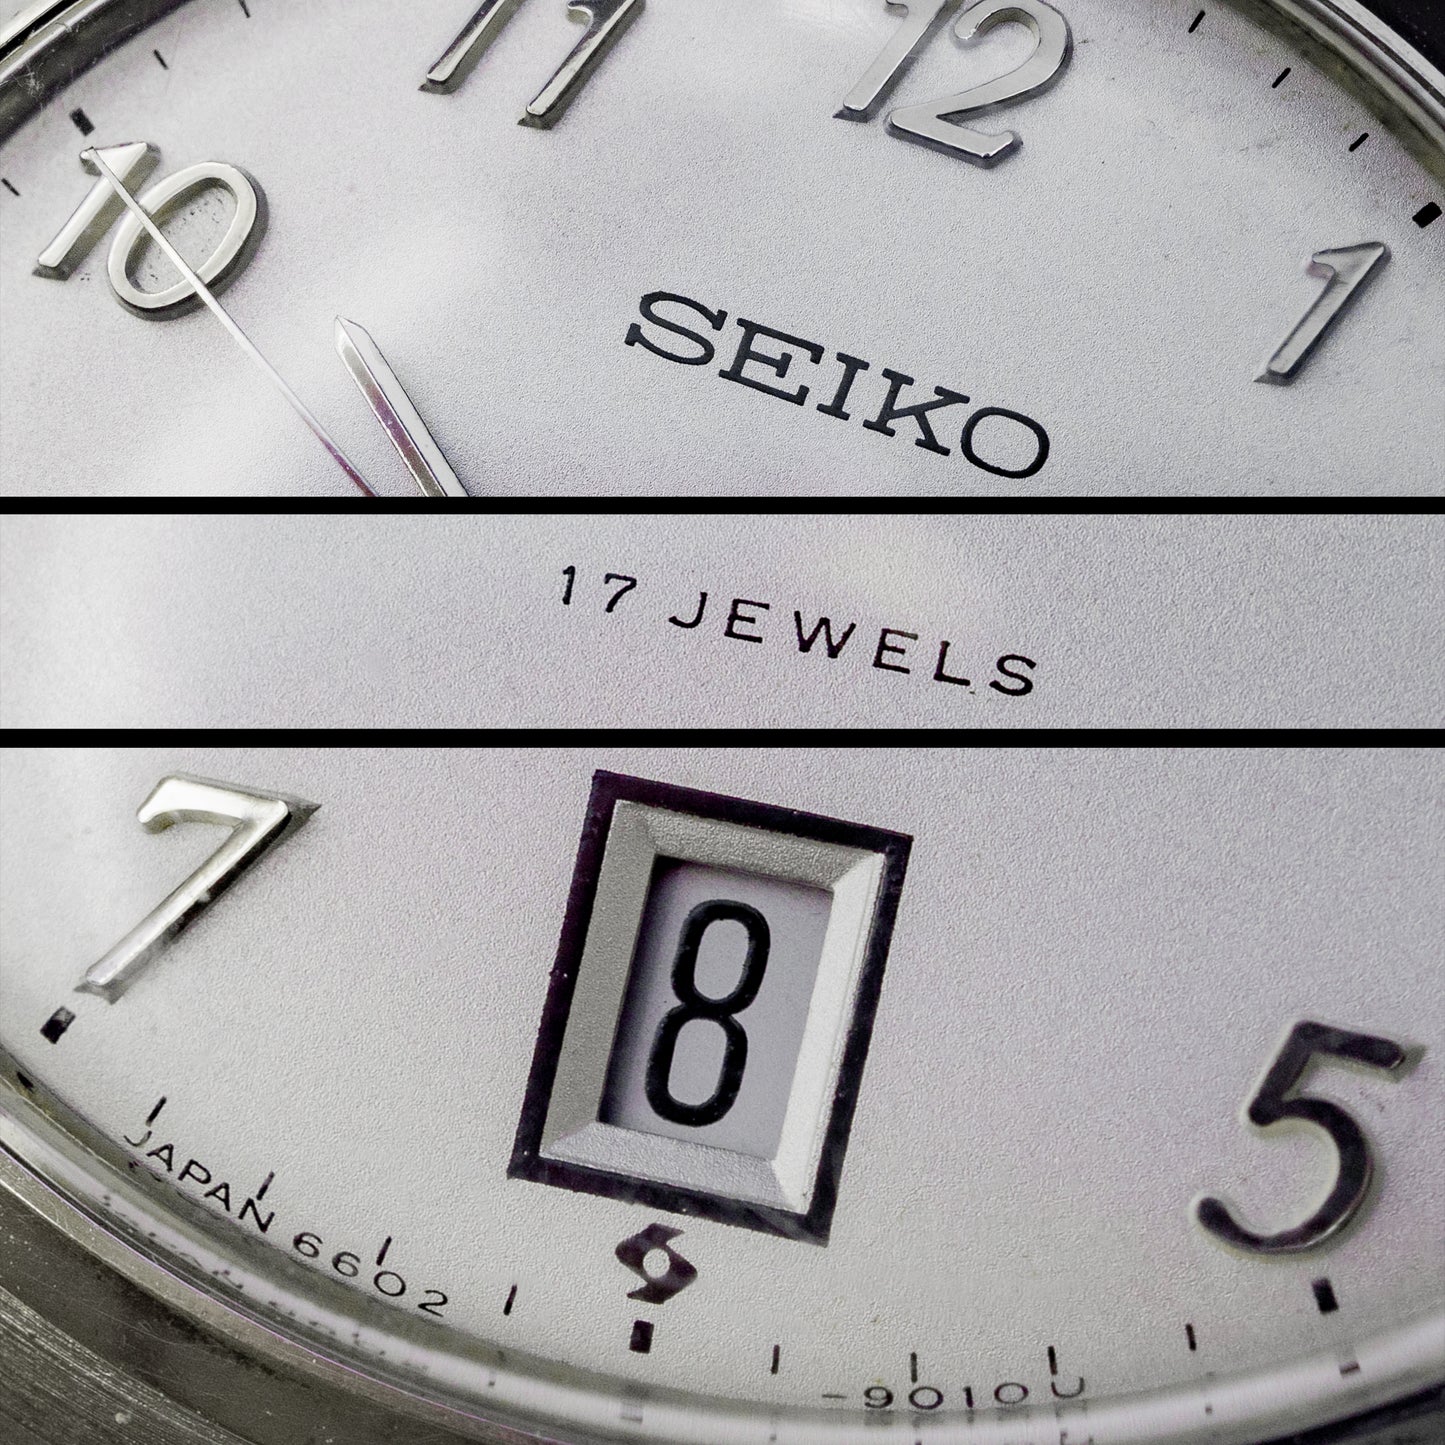 No. 339 / Seiko Pocket Watch - 1969